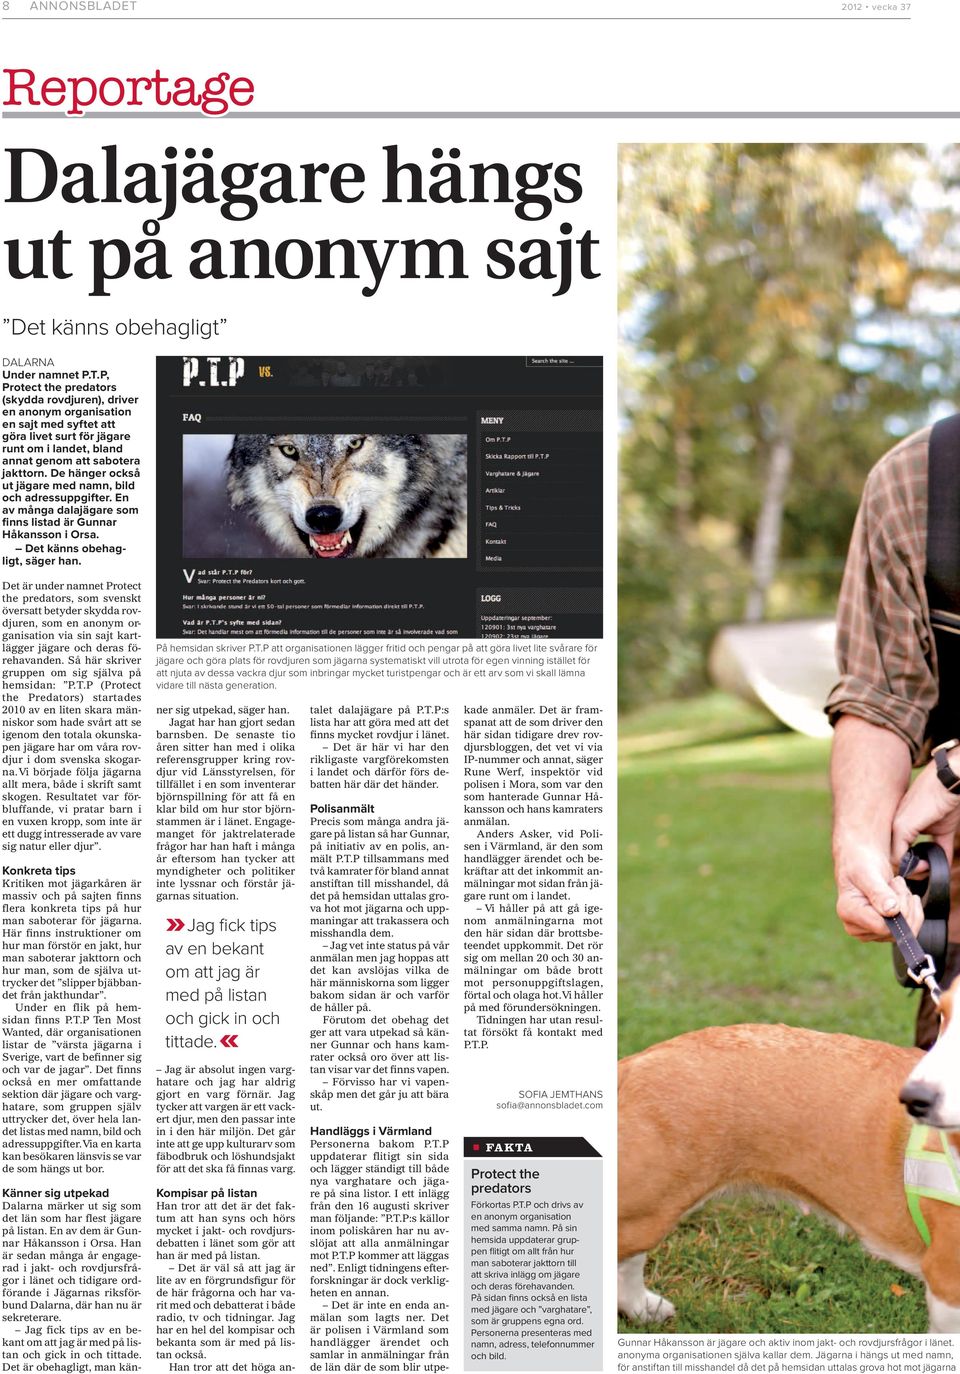 Det är under namnet Protect the predators, som svenskt översatt betyder skydda rovdjuren, som en anonym organisation via sin sajt kartlägger jägare och deras förehavanden.